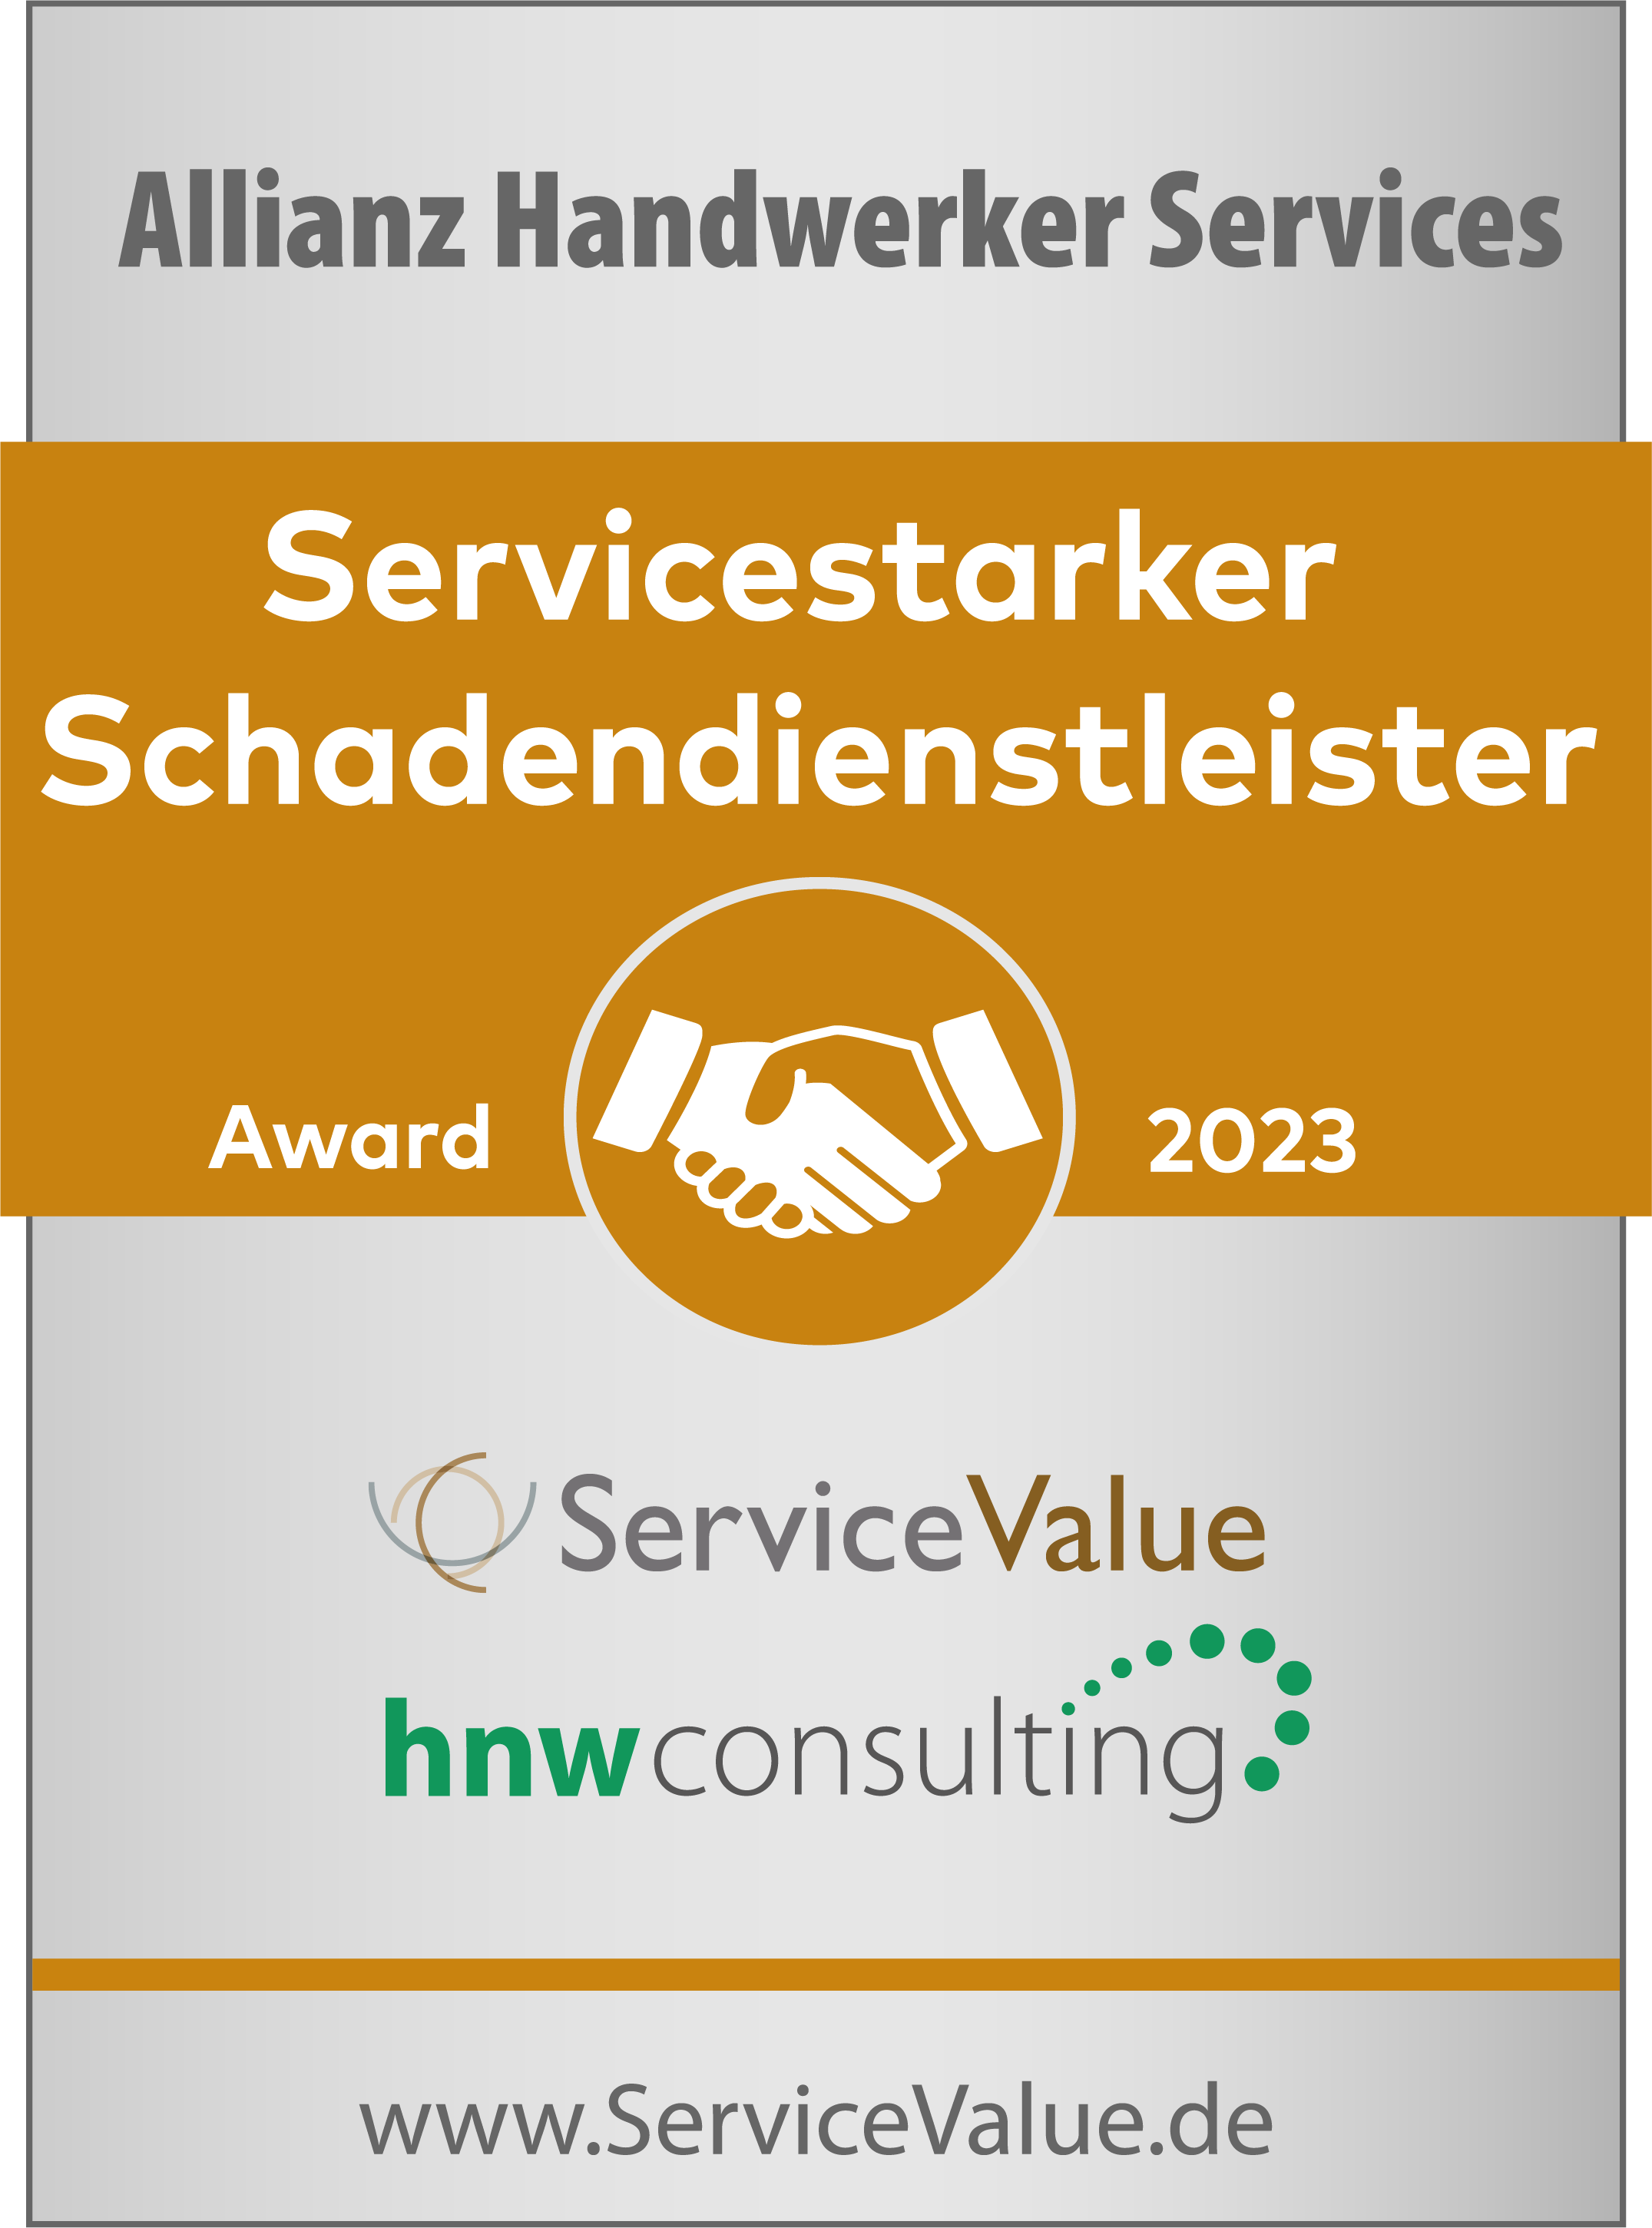 Testsiegel: Allianz Handwerker Services, Servicestarker Schadendienstleister Award 2023